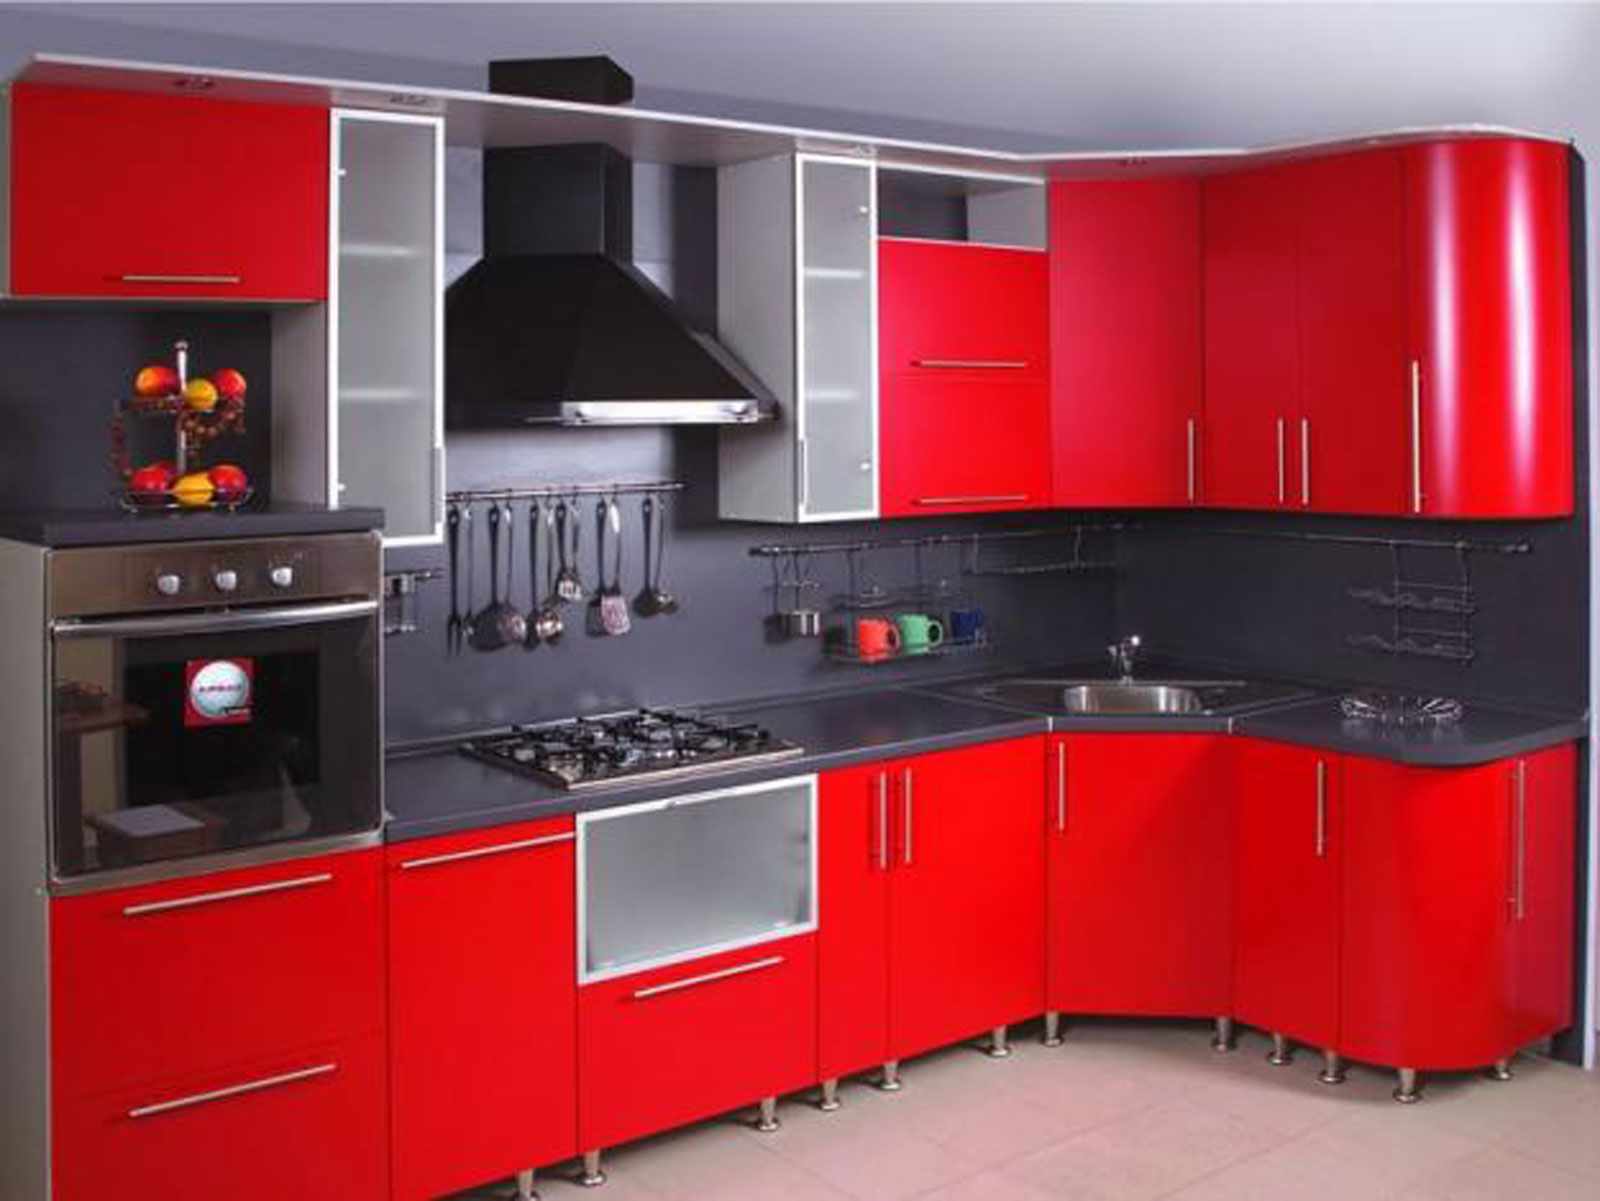 šviesaus interjero raudonos virtuvės idėja